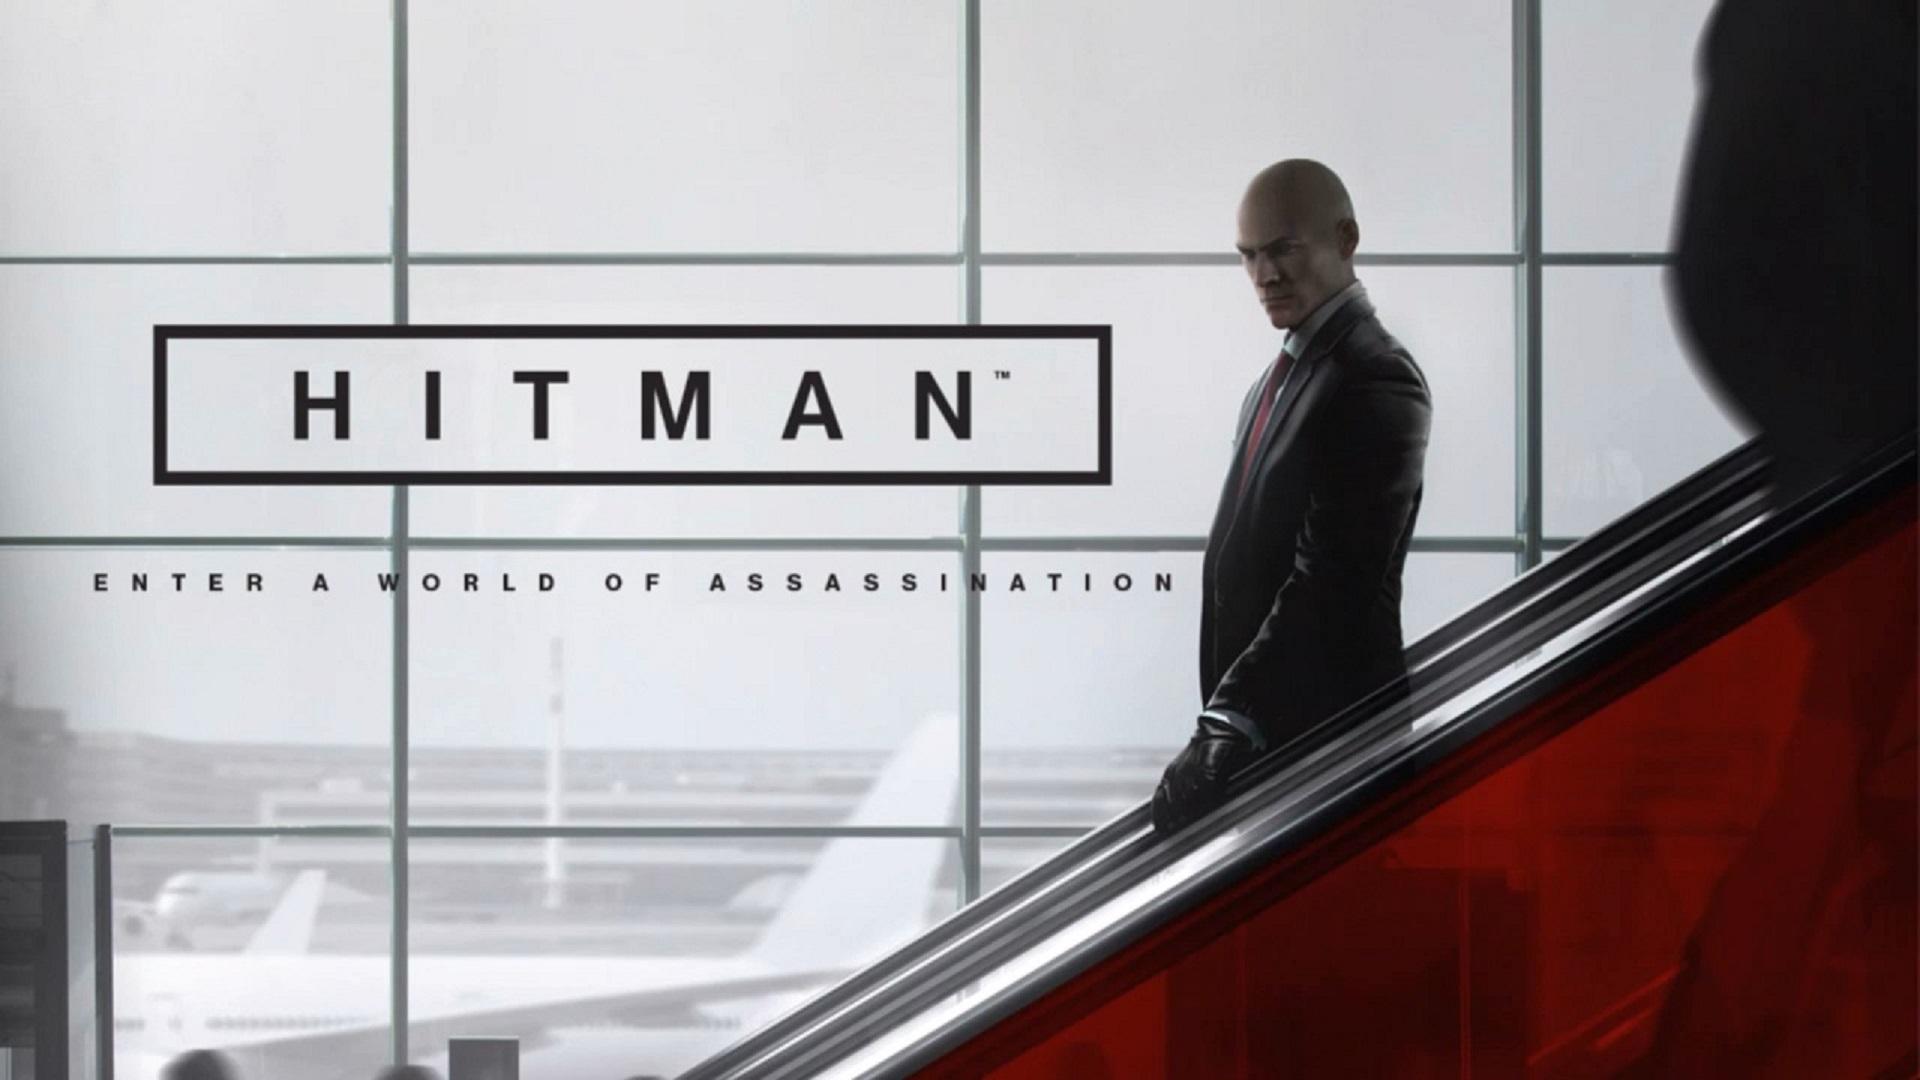 Hitman hé lộ “Thế giới của sát thủ” trong trailer mới - Tin Game